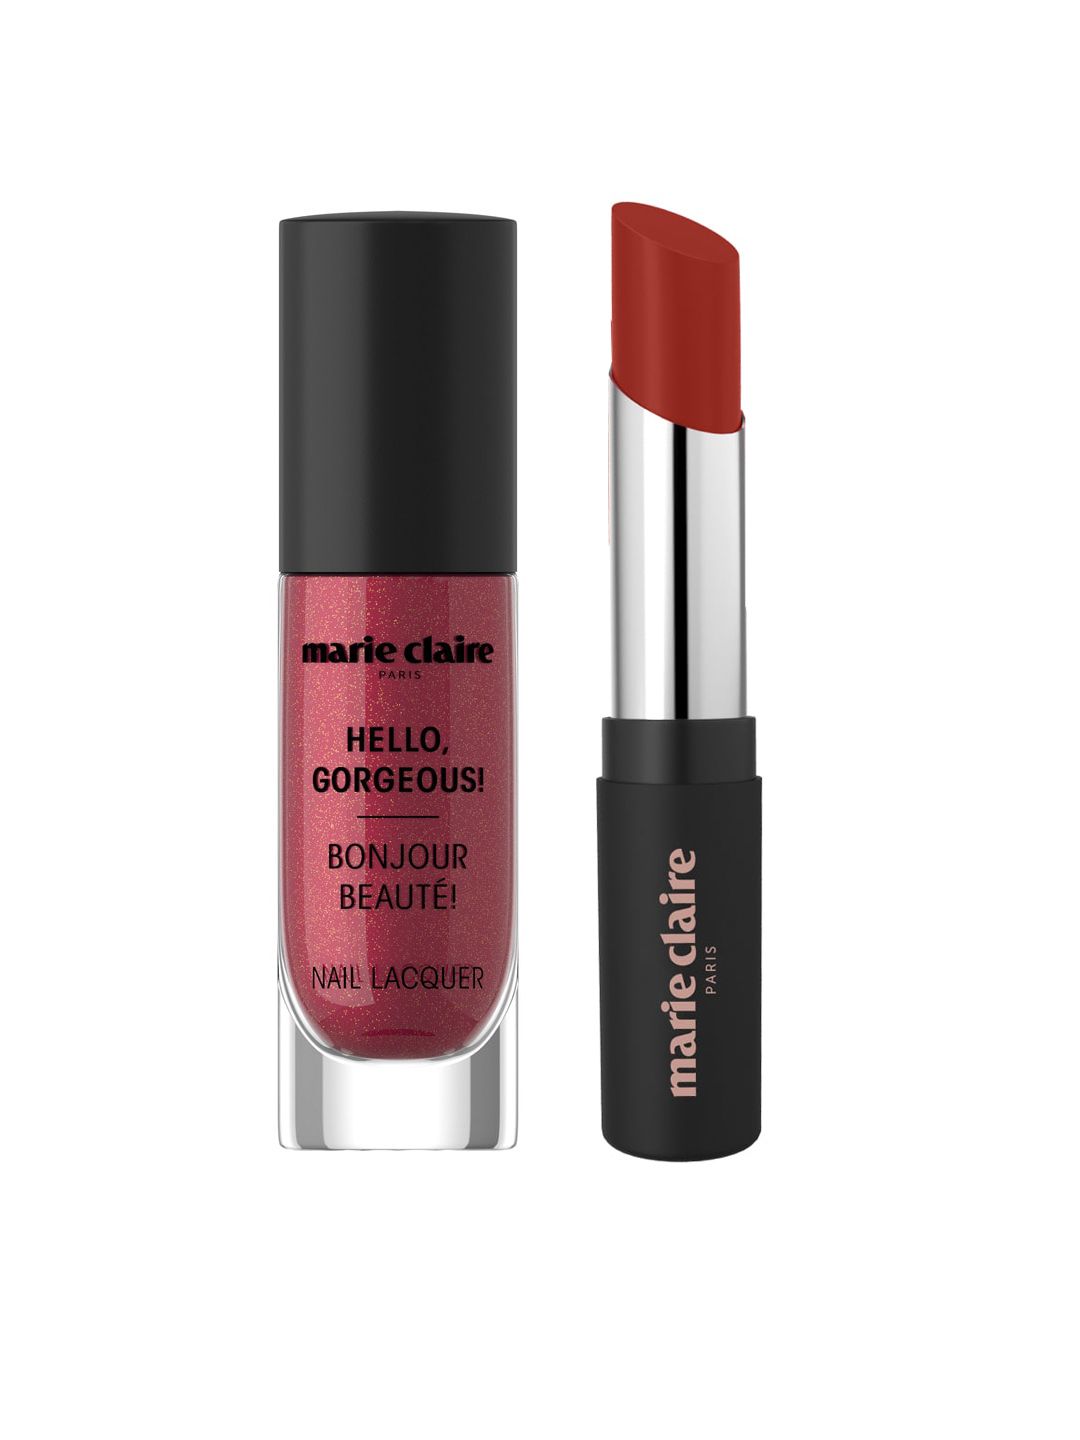 Marie Claire Mtallique Copper Nail Lacquer & Fabuleuse Rust Lipstick Price in India